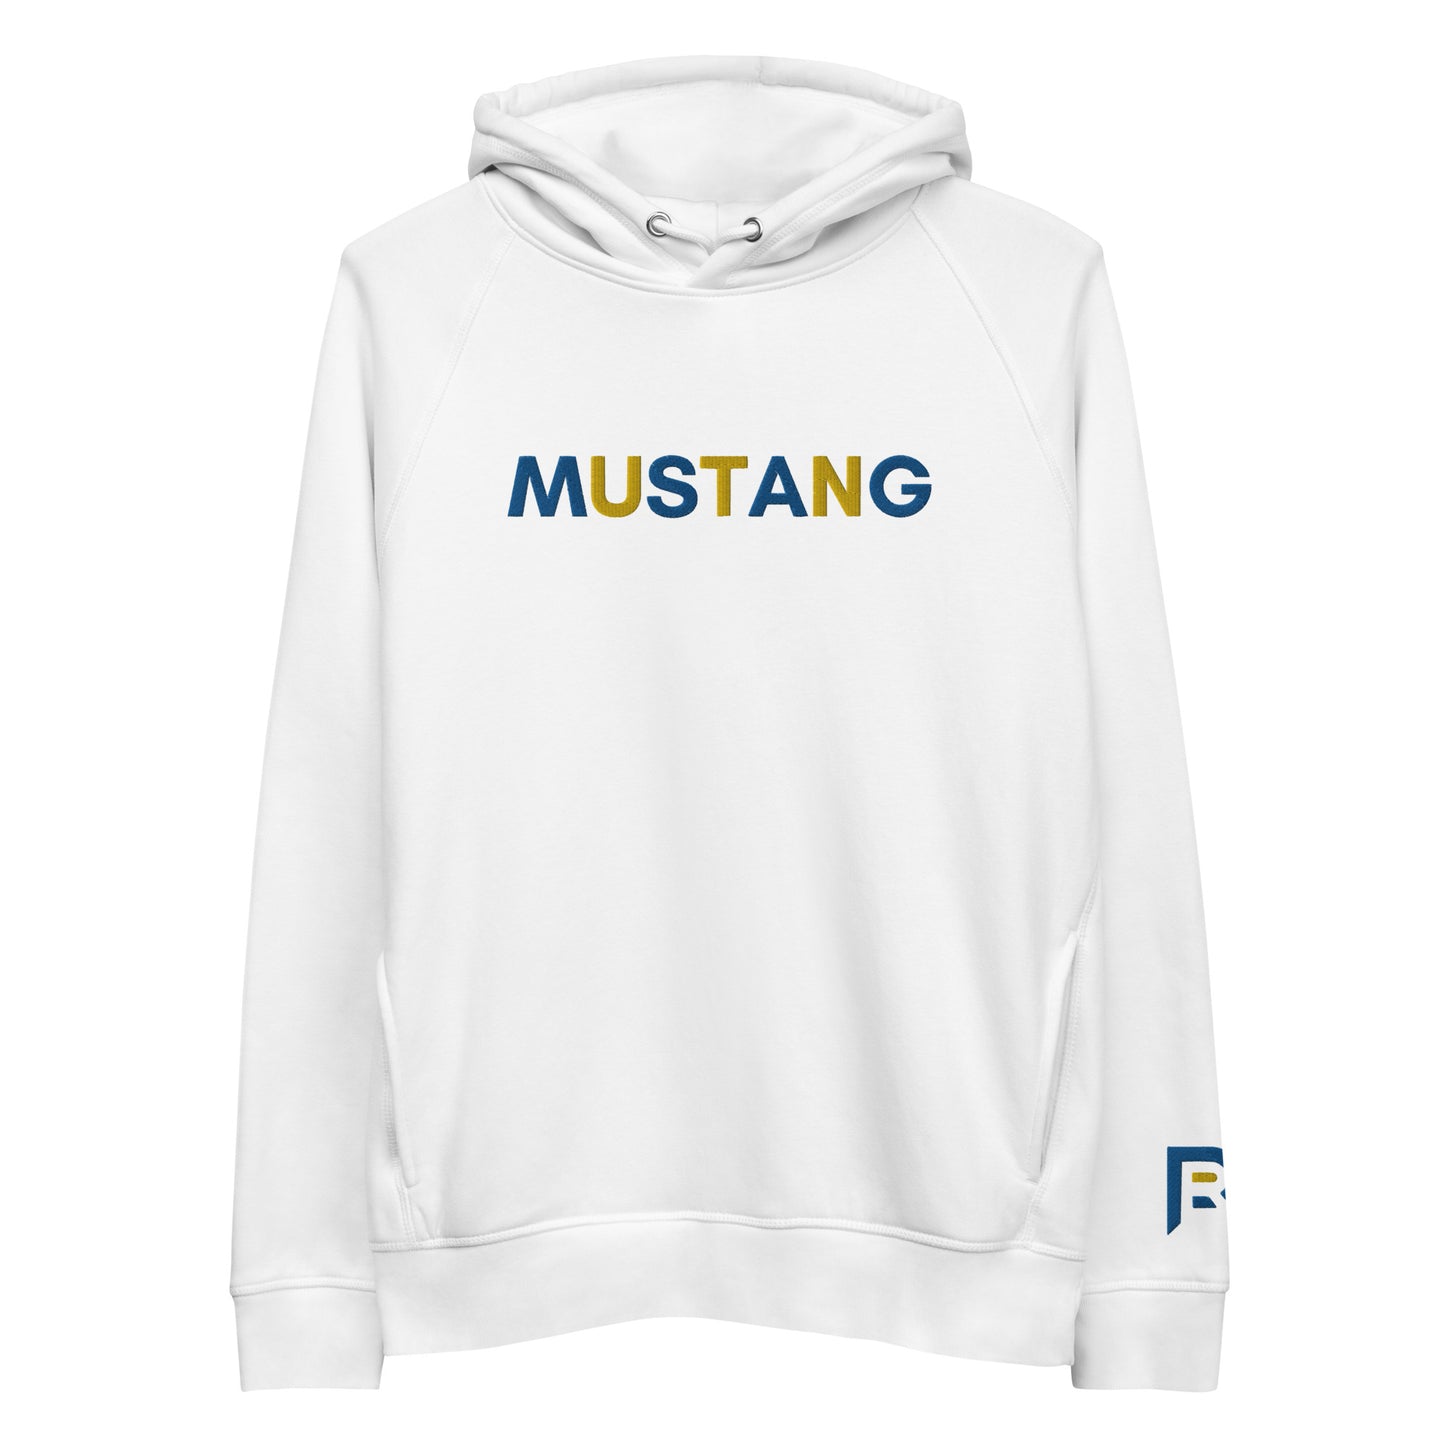 Mustang pullover hoodie